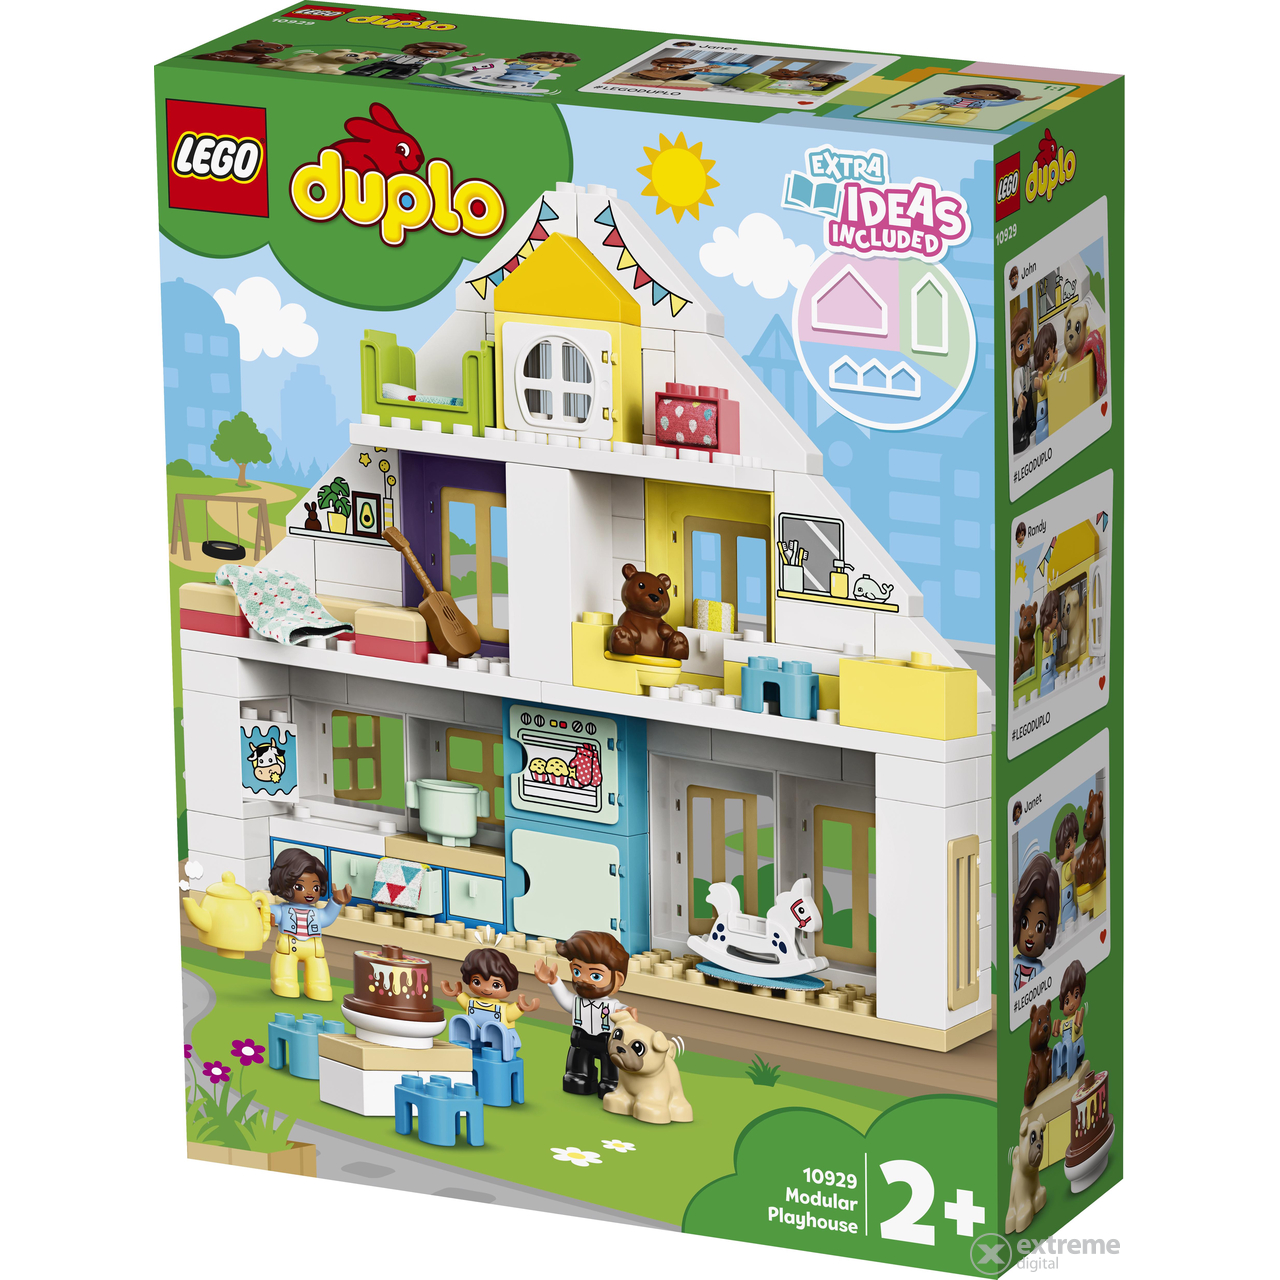 LEGO® DUPLO® Town 10929 Modulares Spielhaus